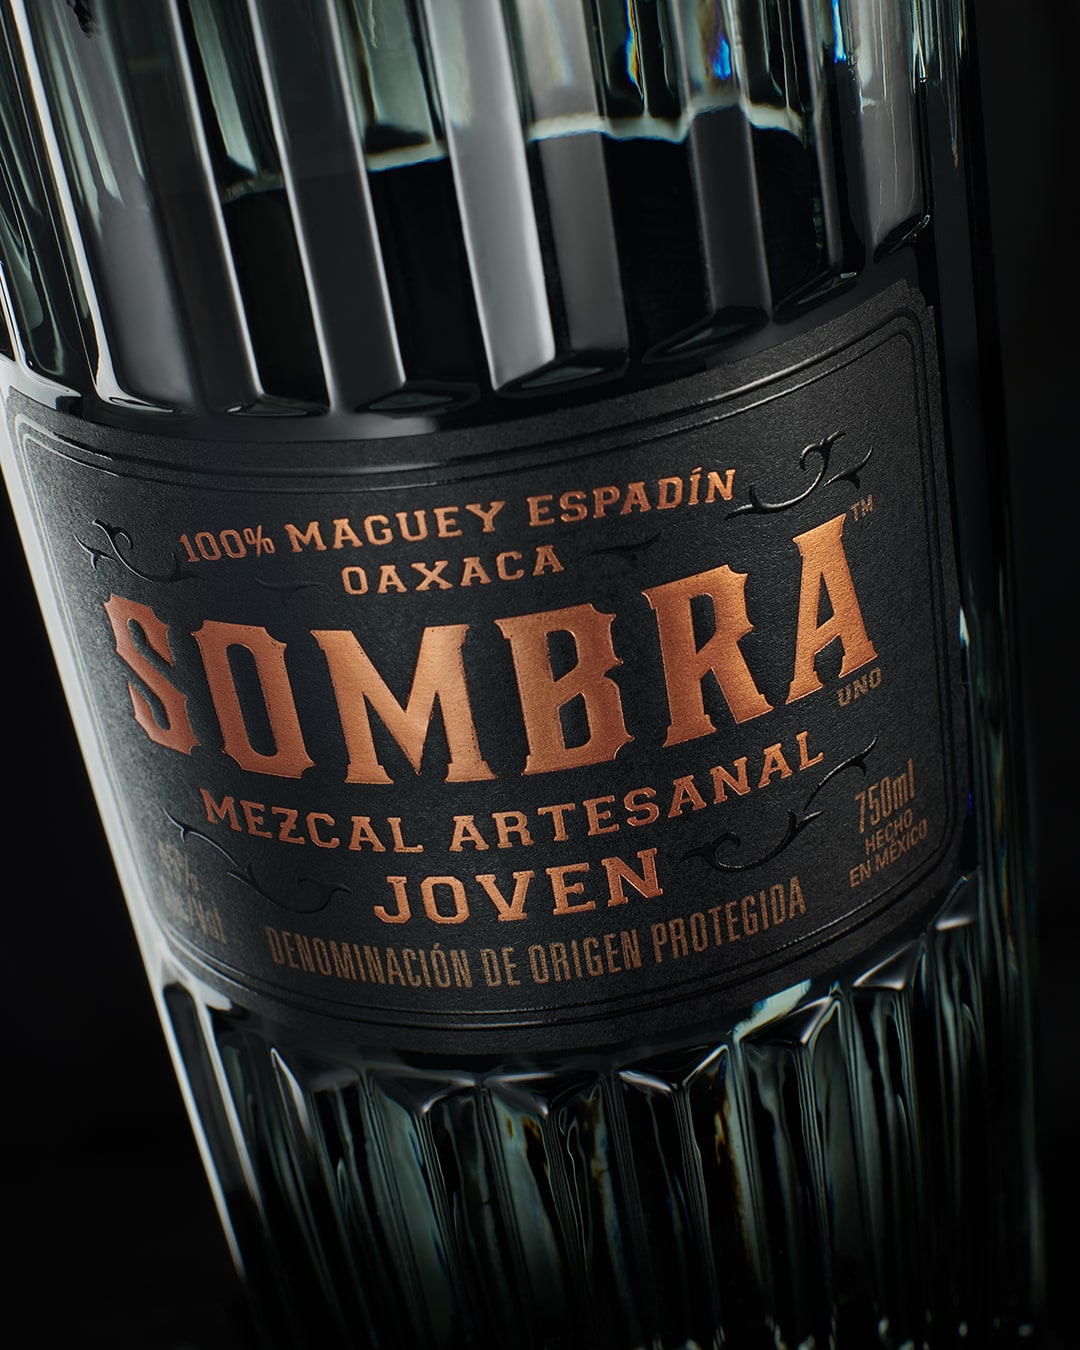 Sombra mezcal bottle foil label design detail